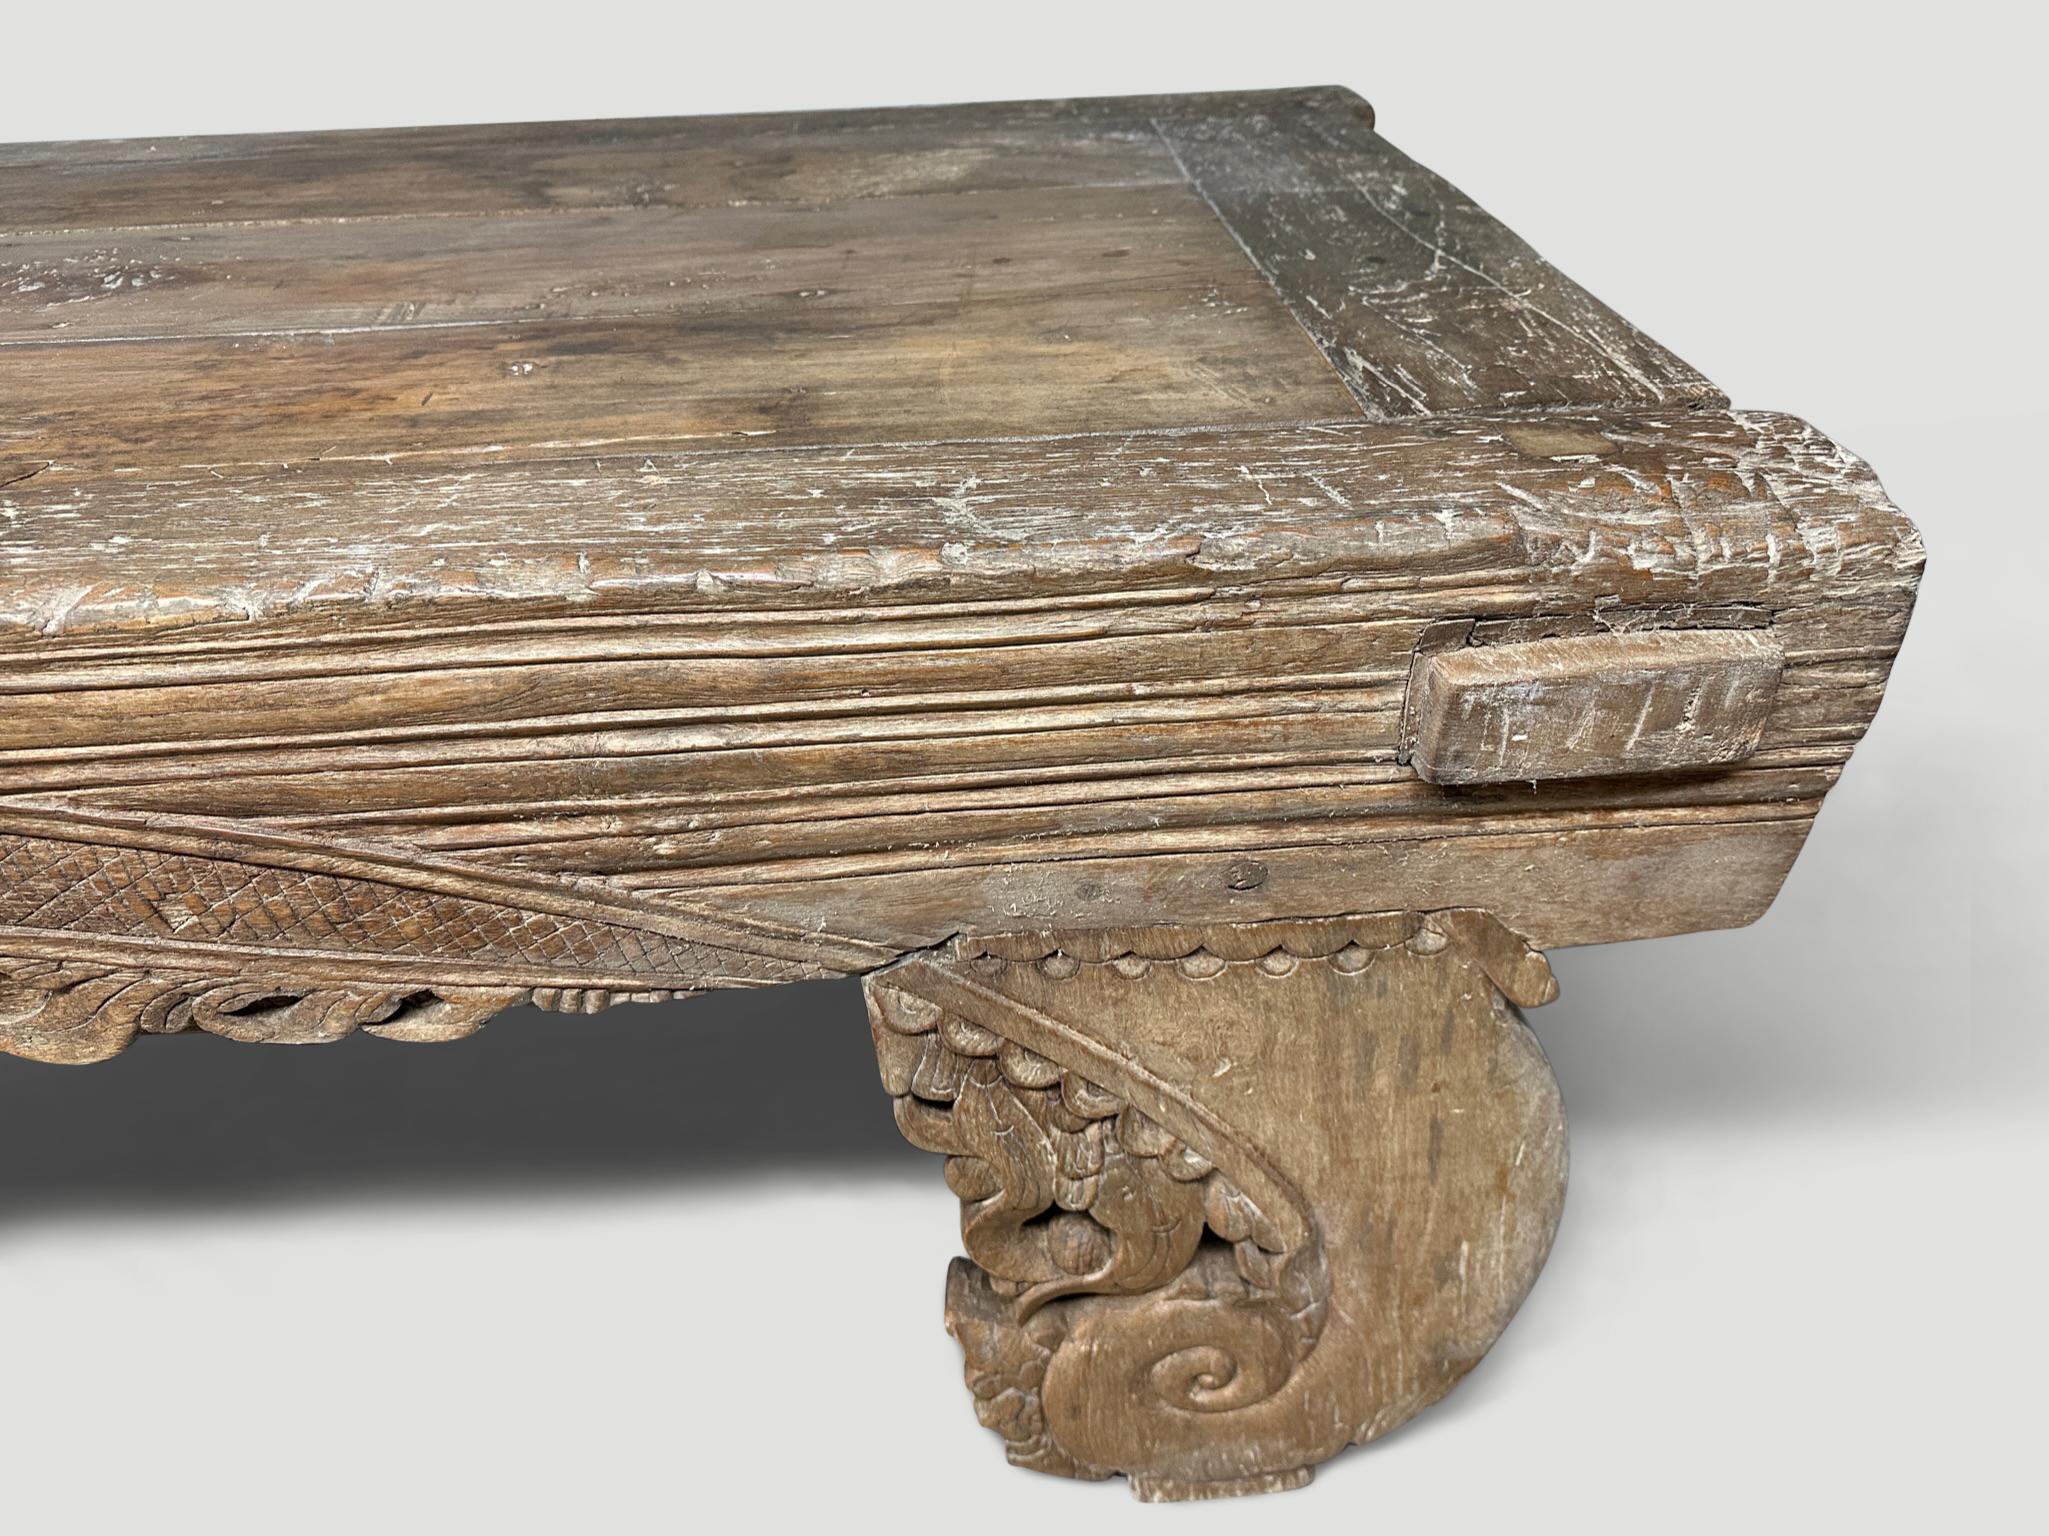 Un rare banc ancien, une table basse ou un lit de jour, avec de multiples utilisations. Cette table authentique provient de l'île de Madura. Circa 1940. Fabriqué à la main de manière traditionnelle à l'aide de chevilles en bois. Superbe sculpture